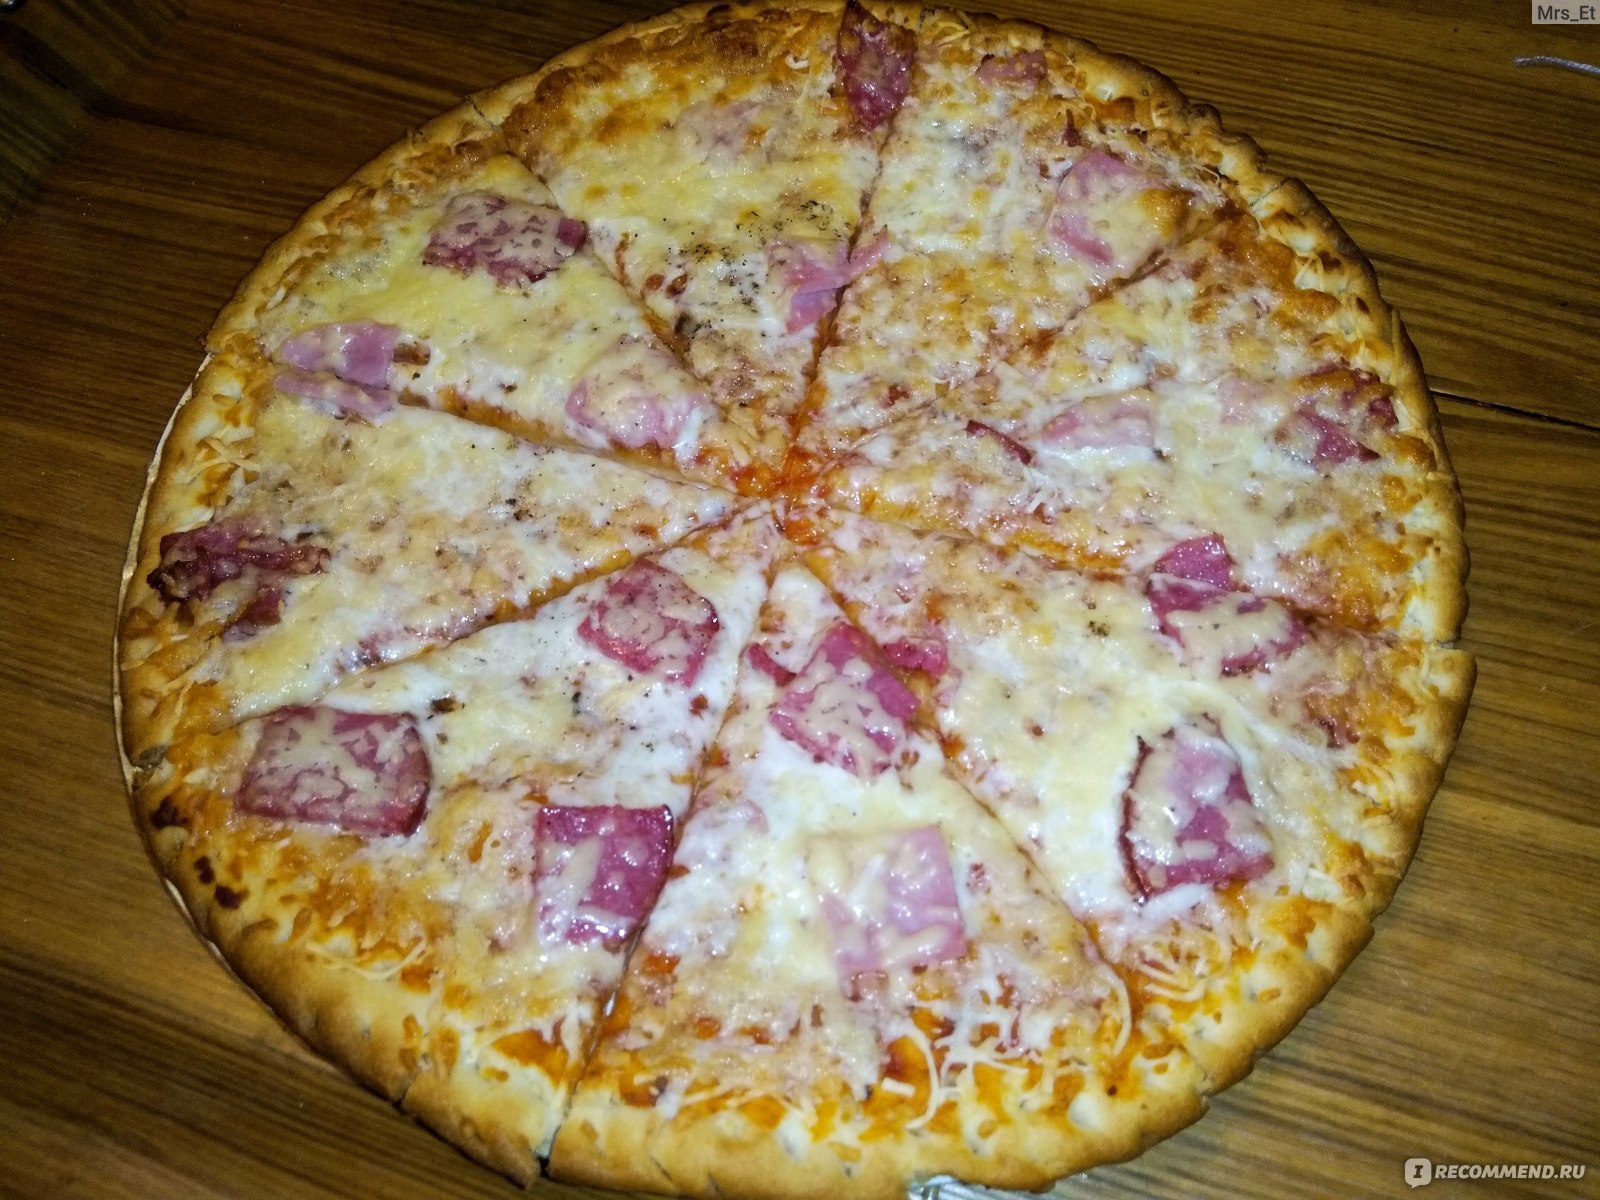 Вкус пиццы видное ермолинская